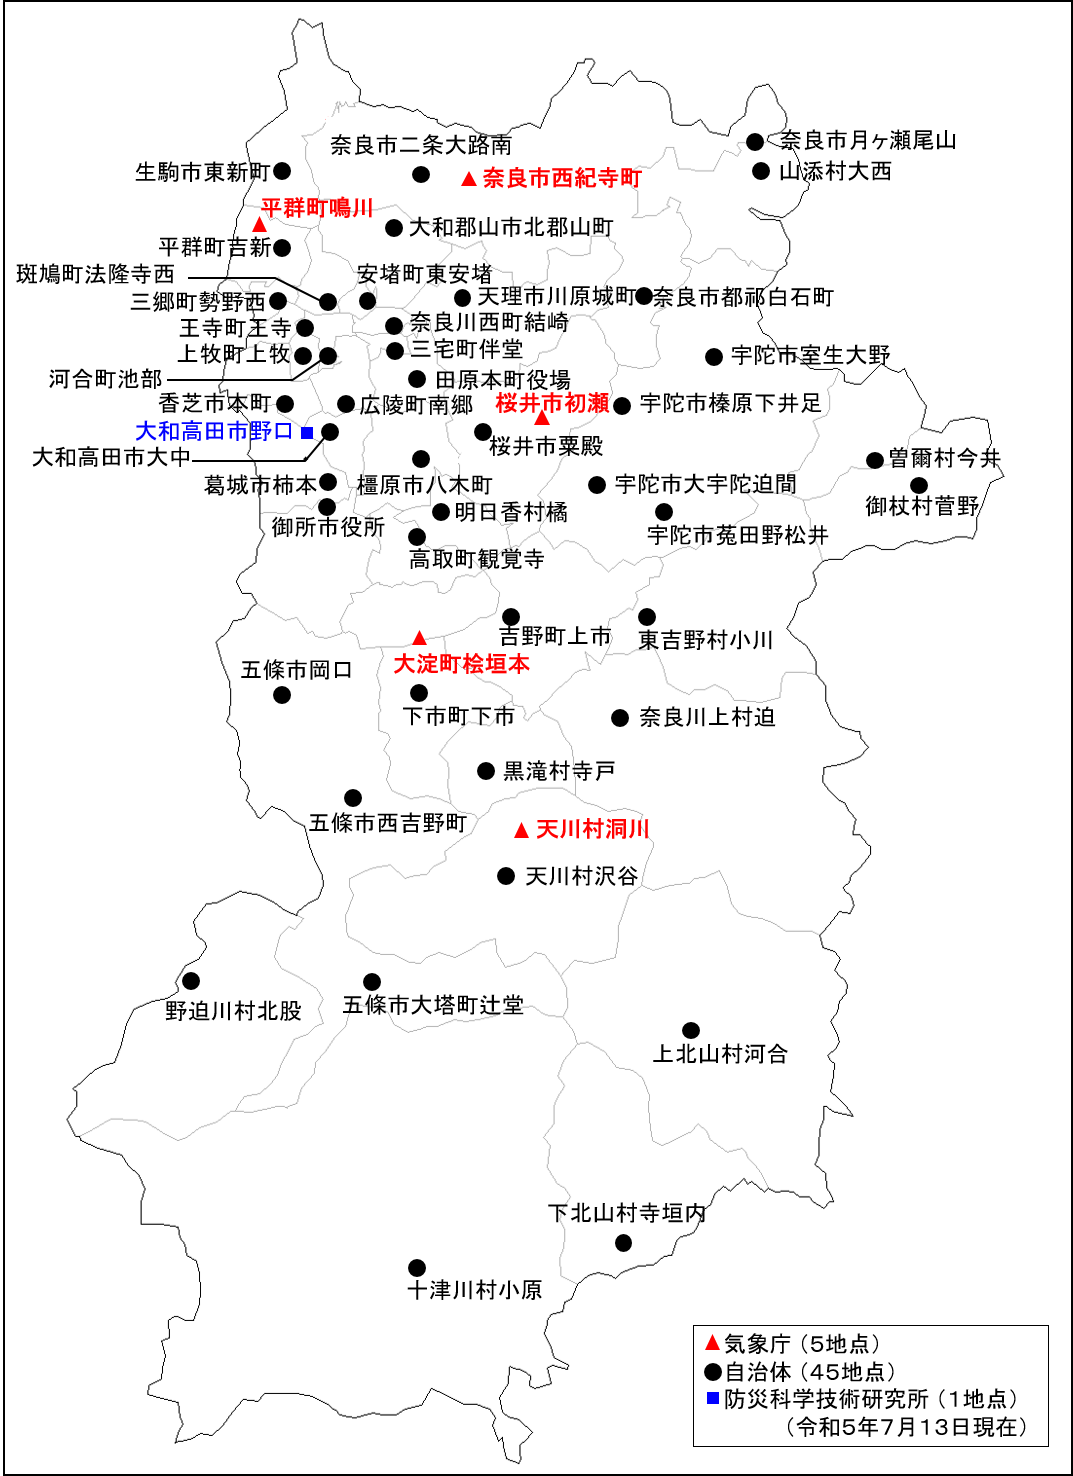 奈良県の地震情報に使用する震度観測点配置図